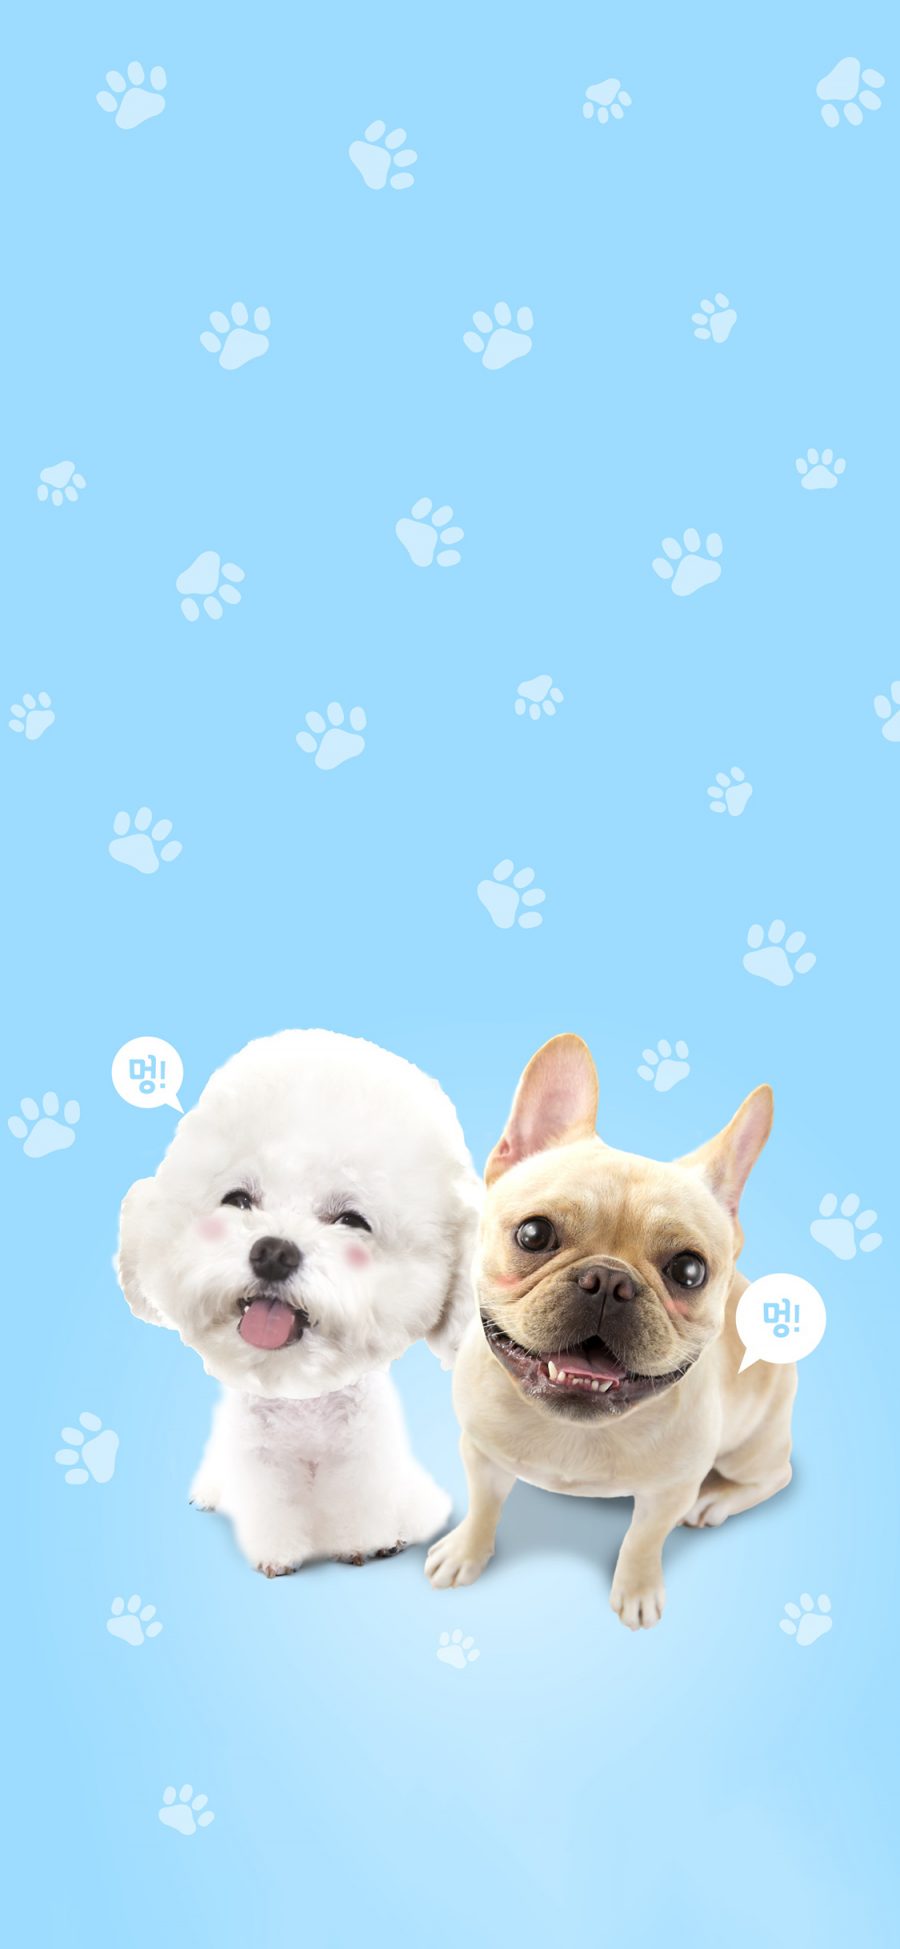 [2436×1125]宠物狗 比熊 斗牛犬 可爱 苹果手机壁纸图片